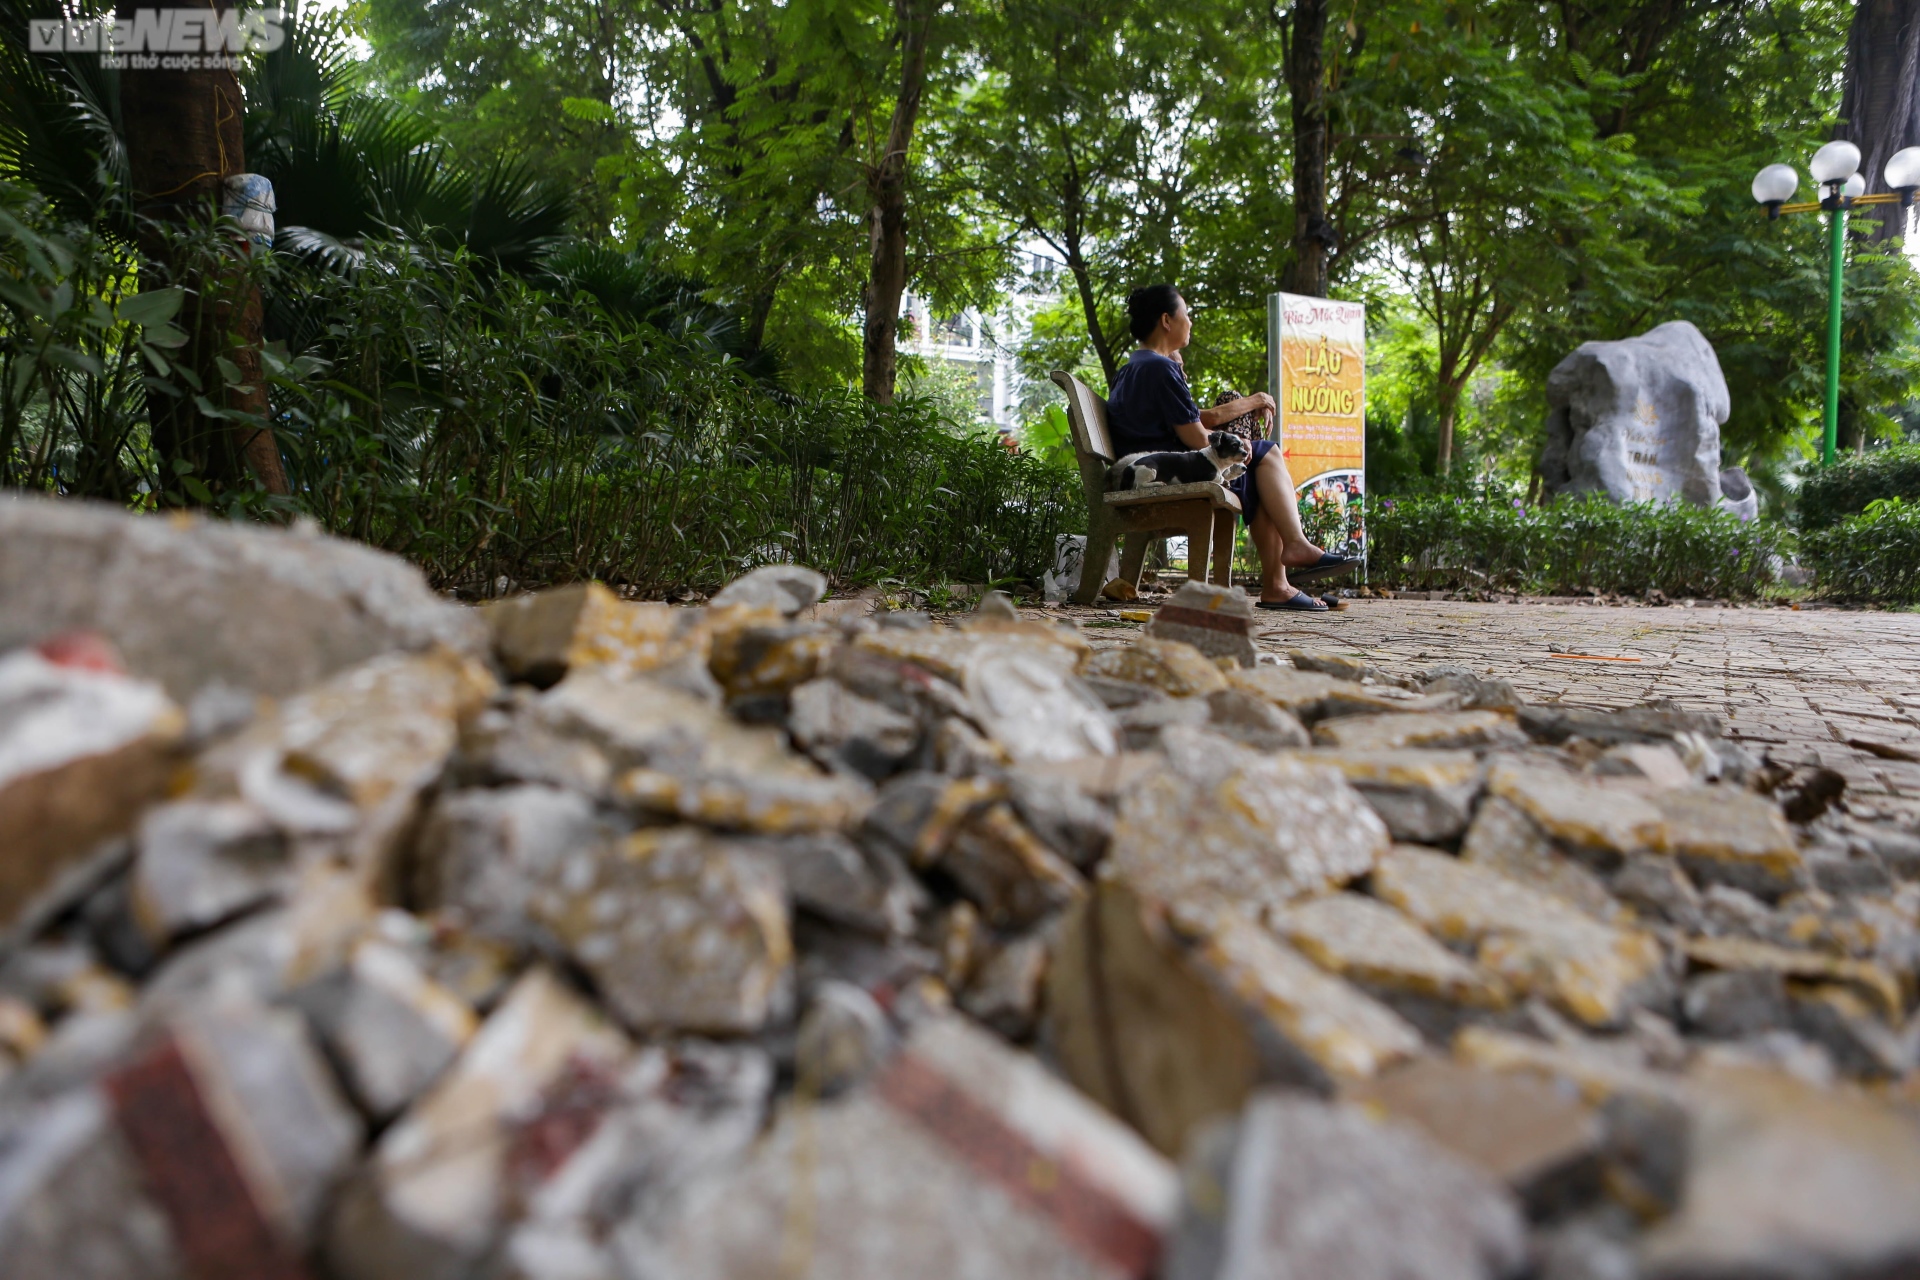 Vườn hoa 52 tỷ đồng ở Hà Nội xuống cấp trầm trọng, thành nơi đổ rác - Ảnh 7.